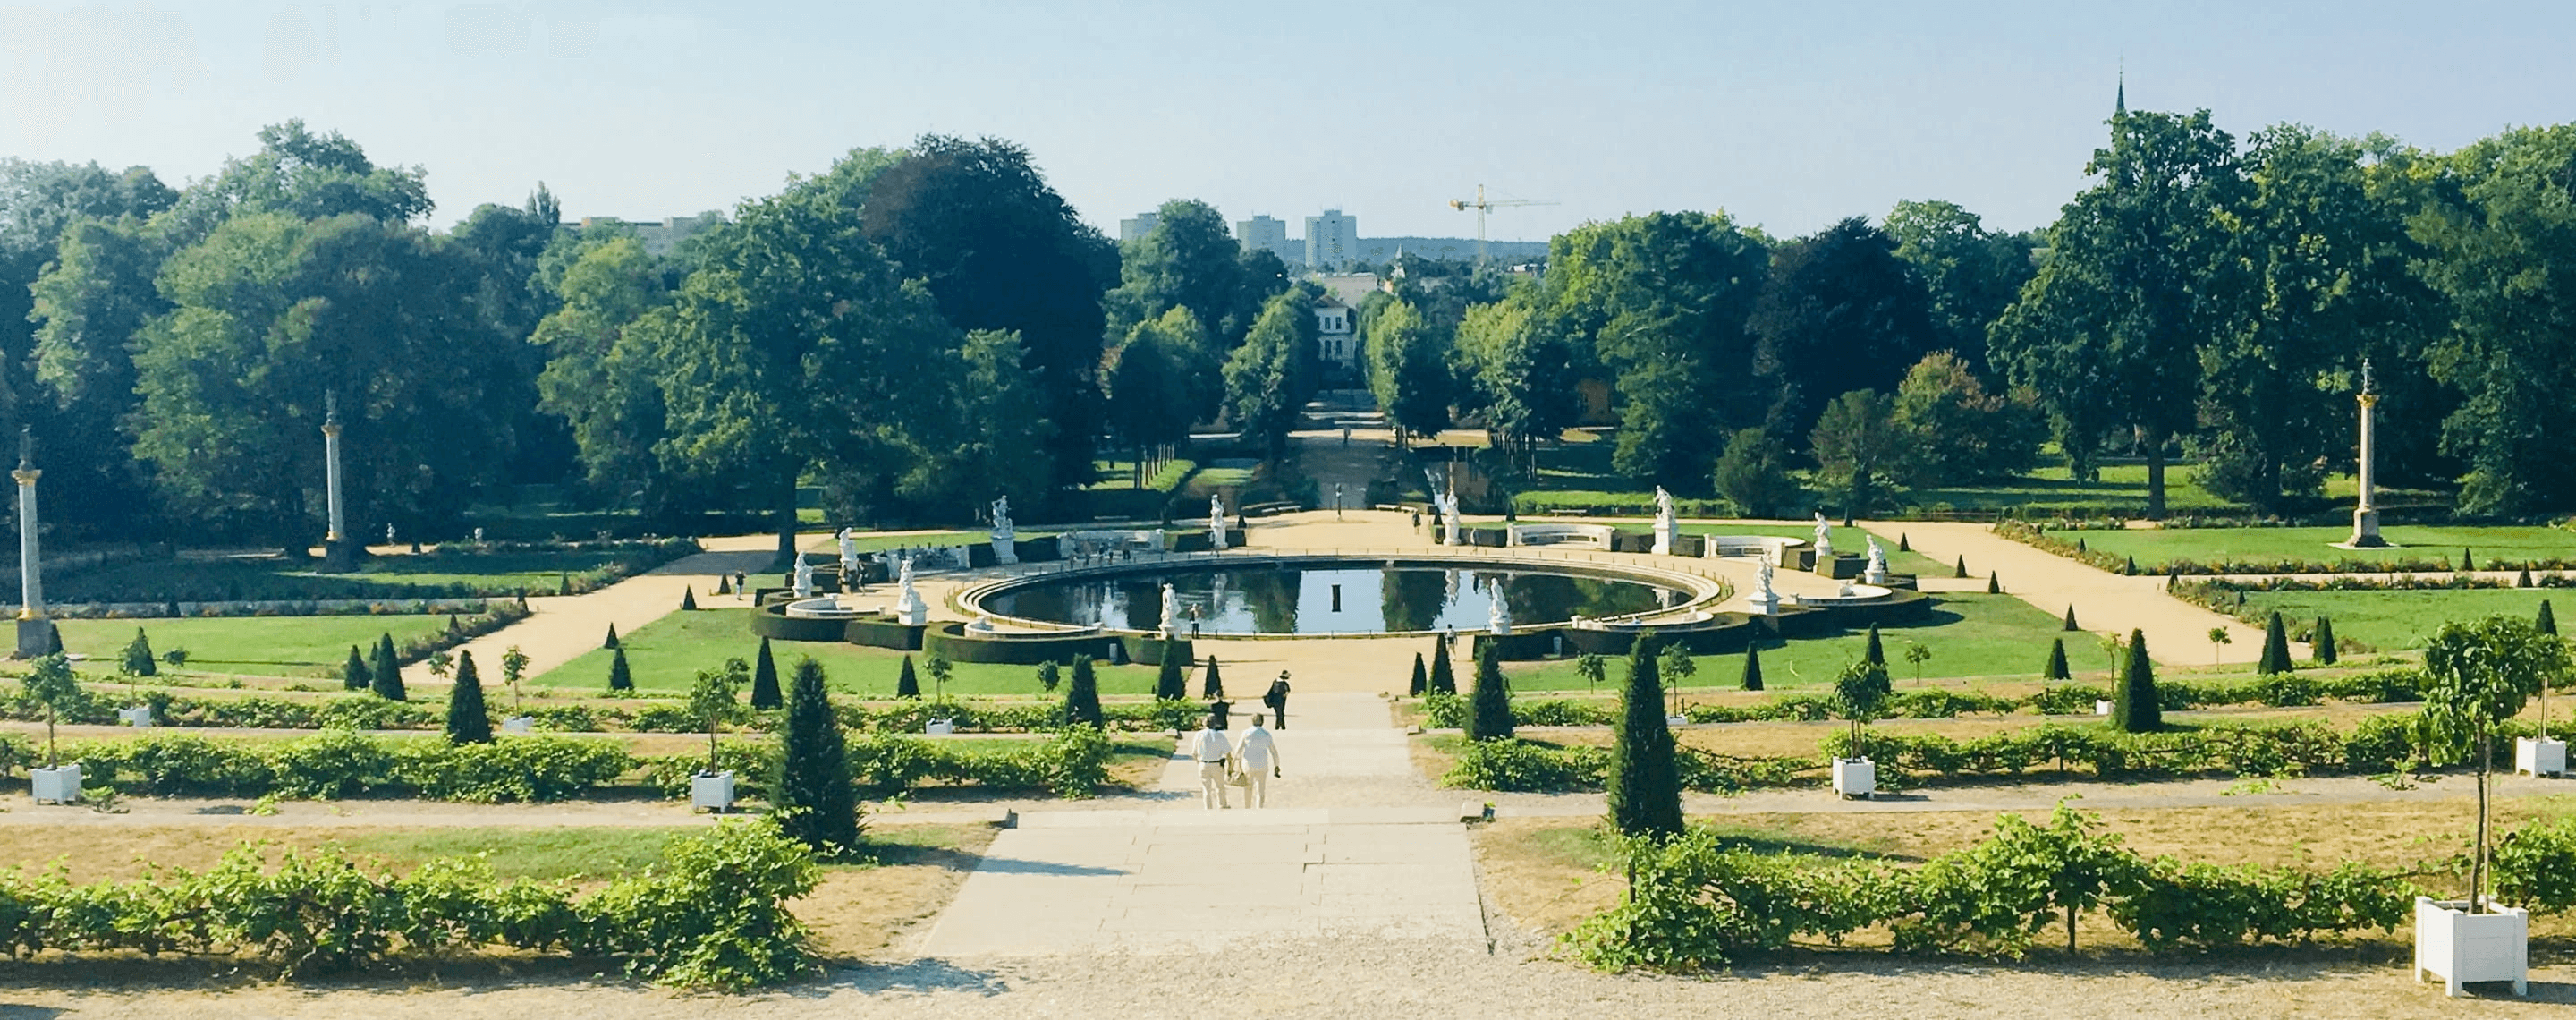 Gartenanlage von Schloss Sanssouci in Potsdam